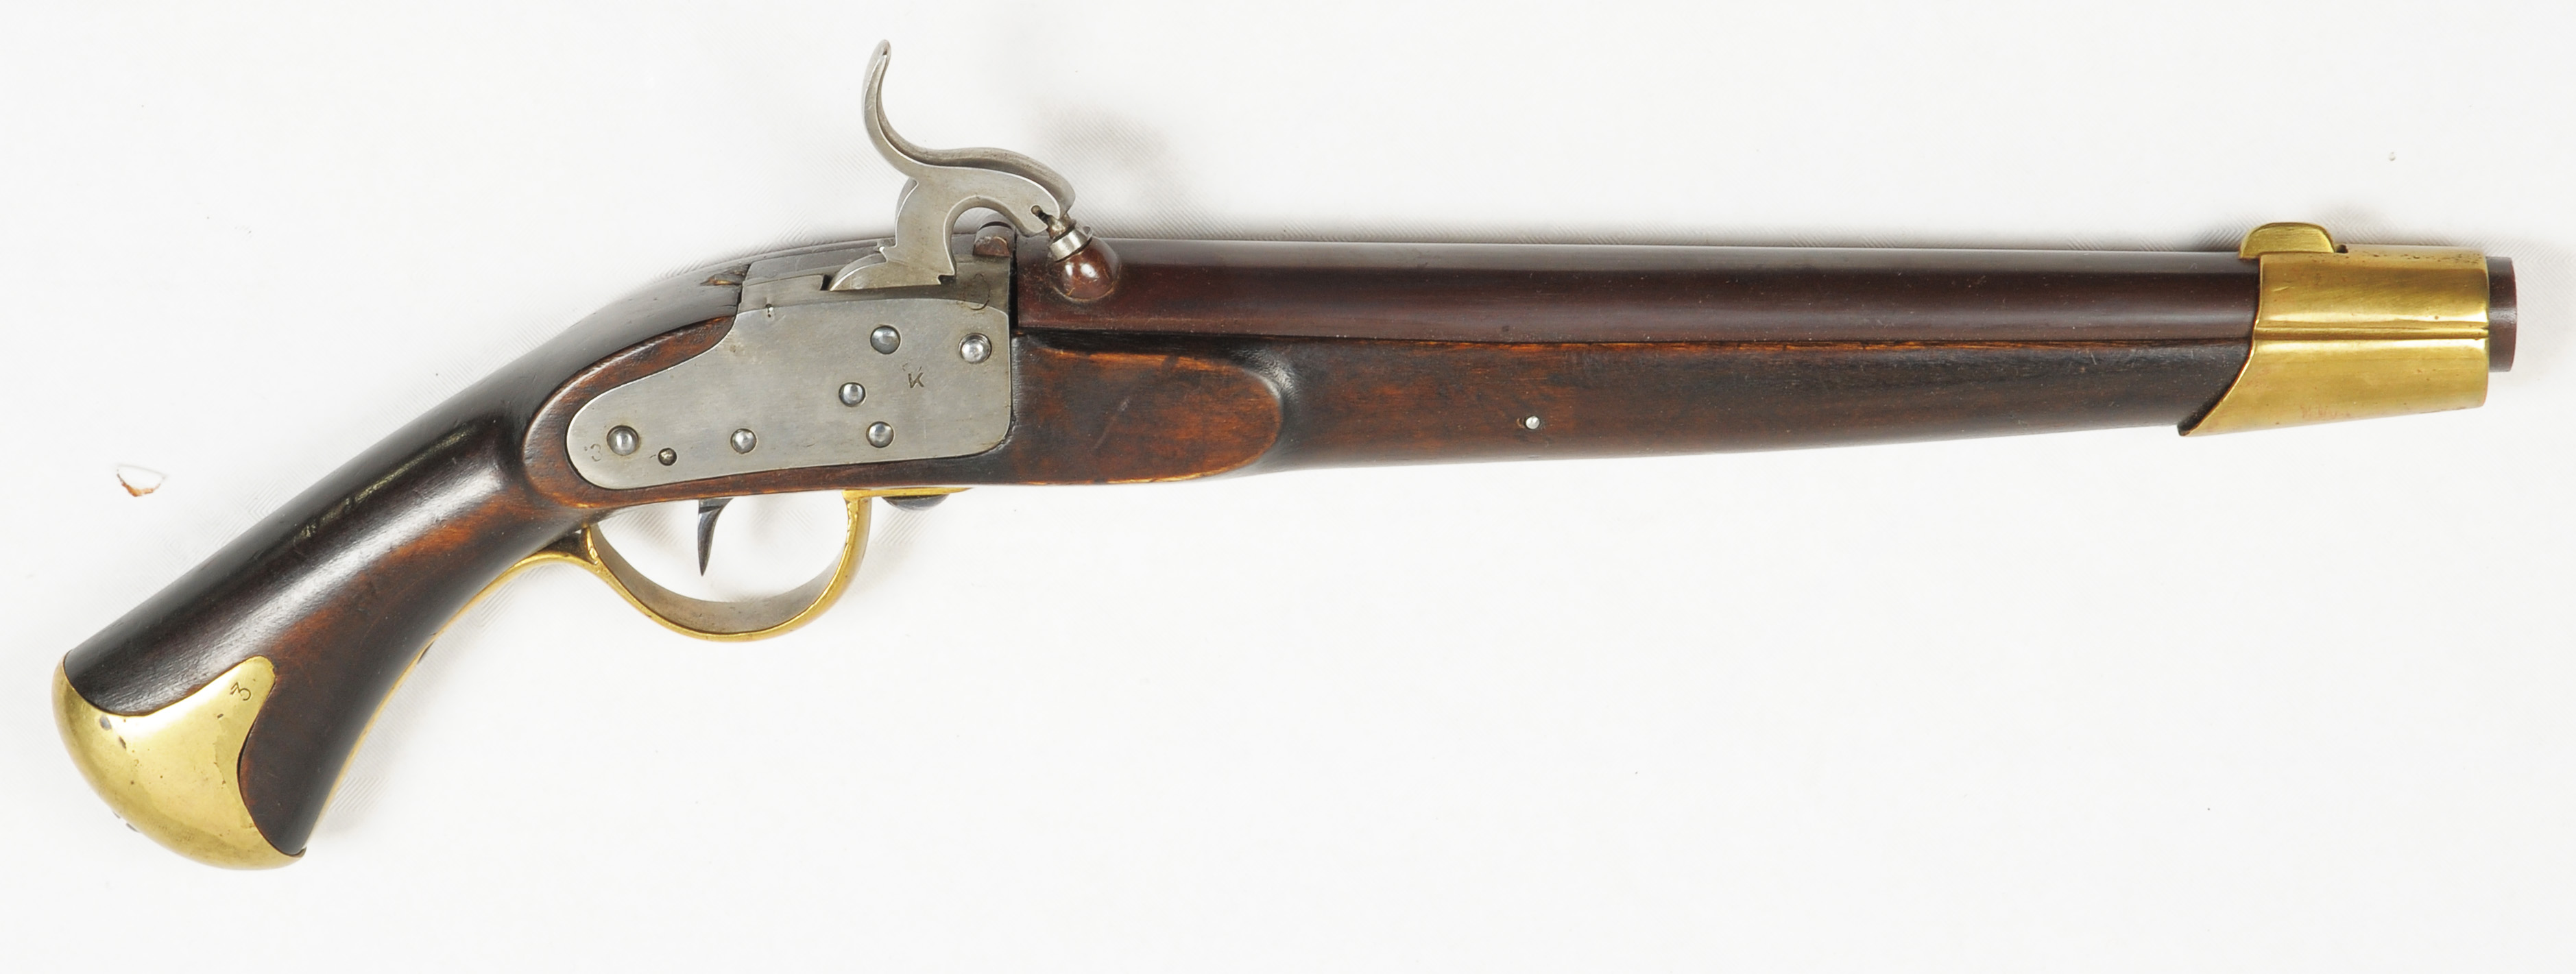 ./guns/pistol/bilder/Pistol-Kongsberg-1835-Malmberg-3-1.jpg